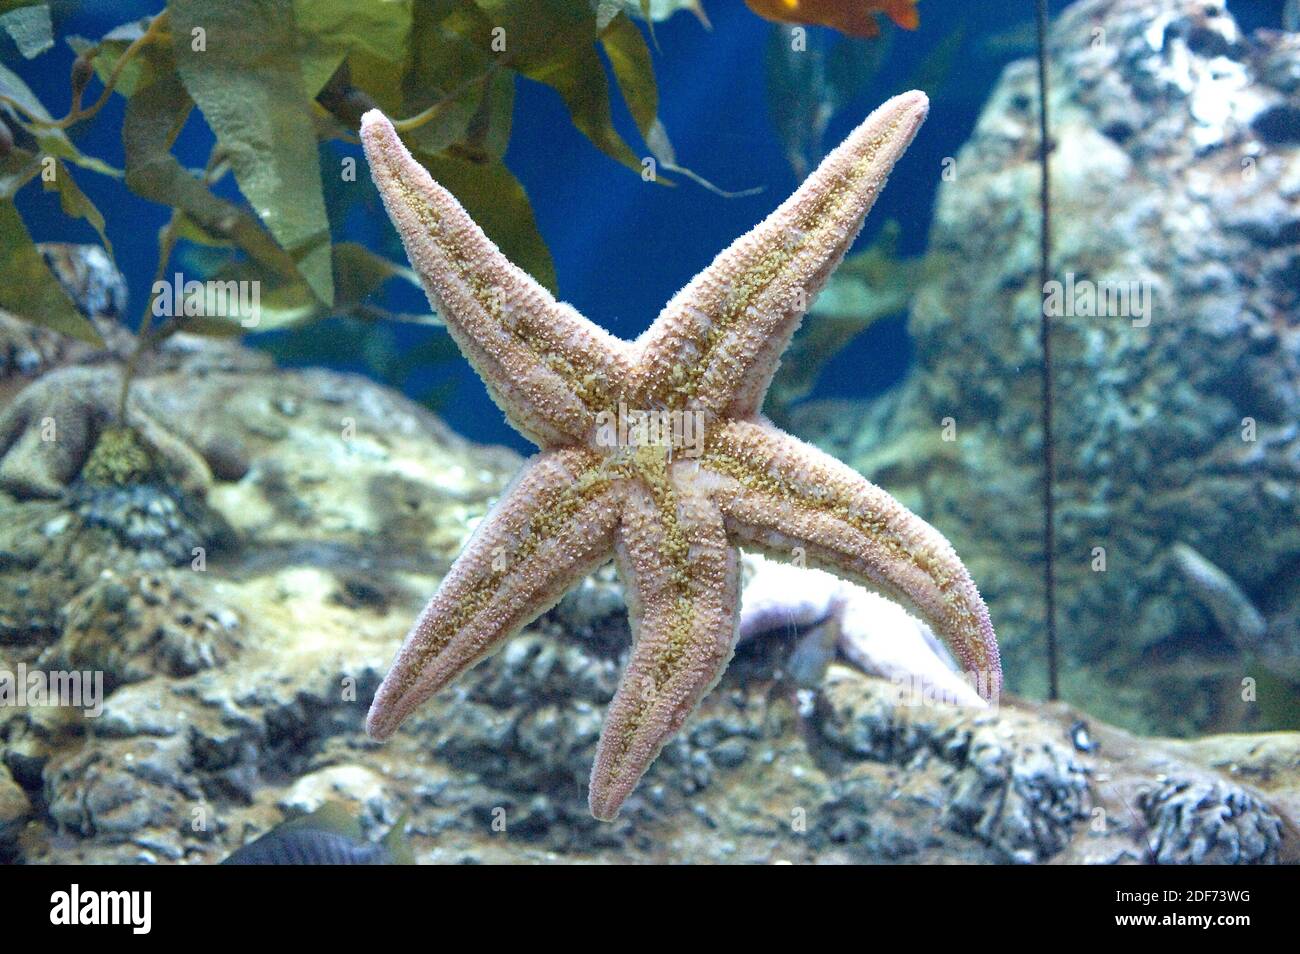 L'étoile de mer rose (Pisaster brevispinus) est une étoile de mer carnivore originaire du nord-est de l'océan Pacifique. Visage oral. Banque D'Images